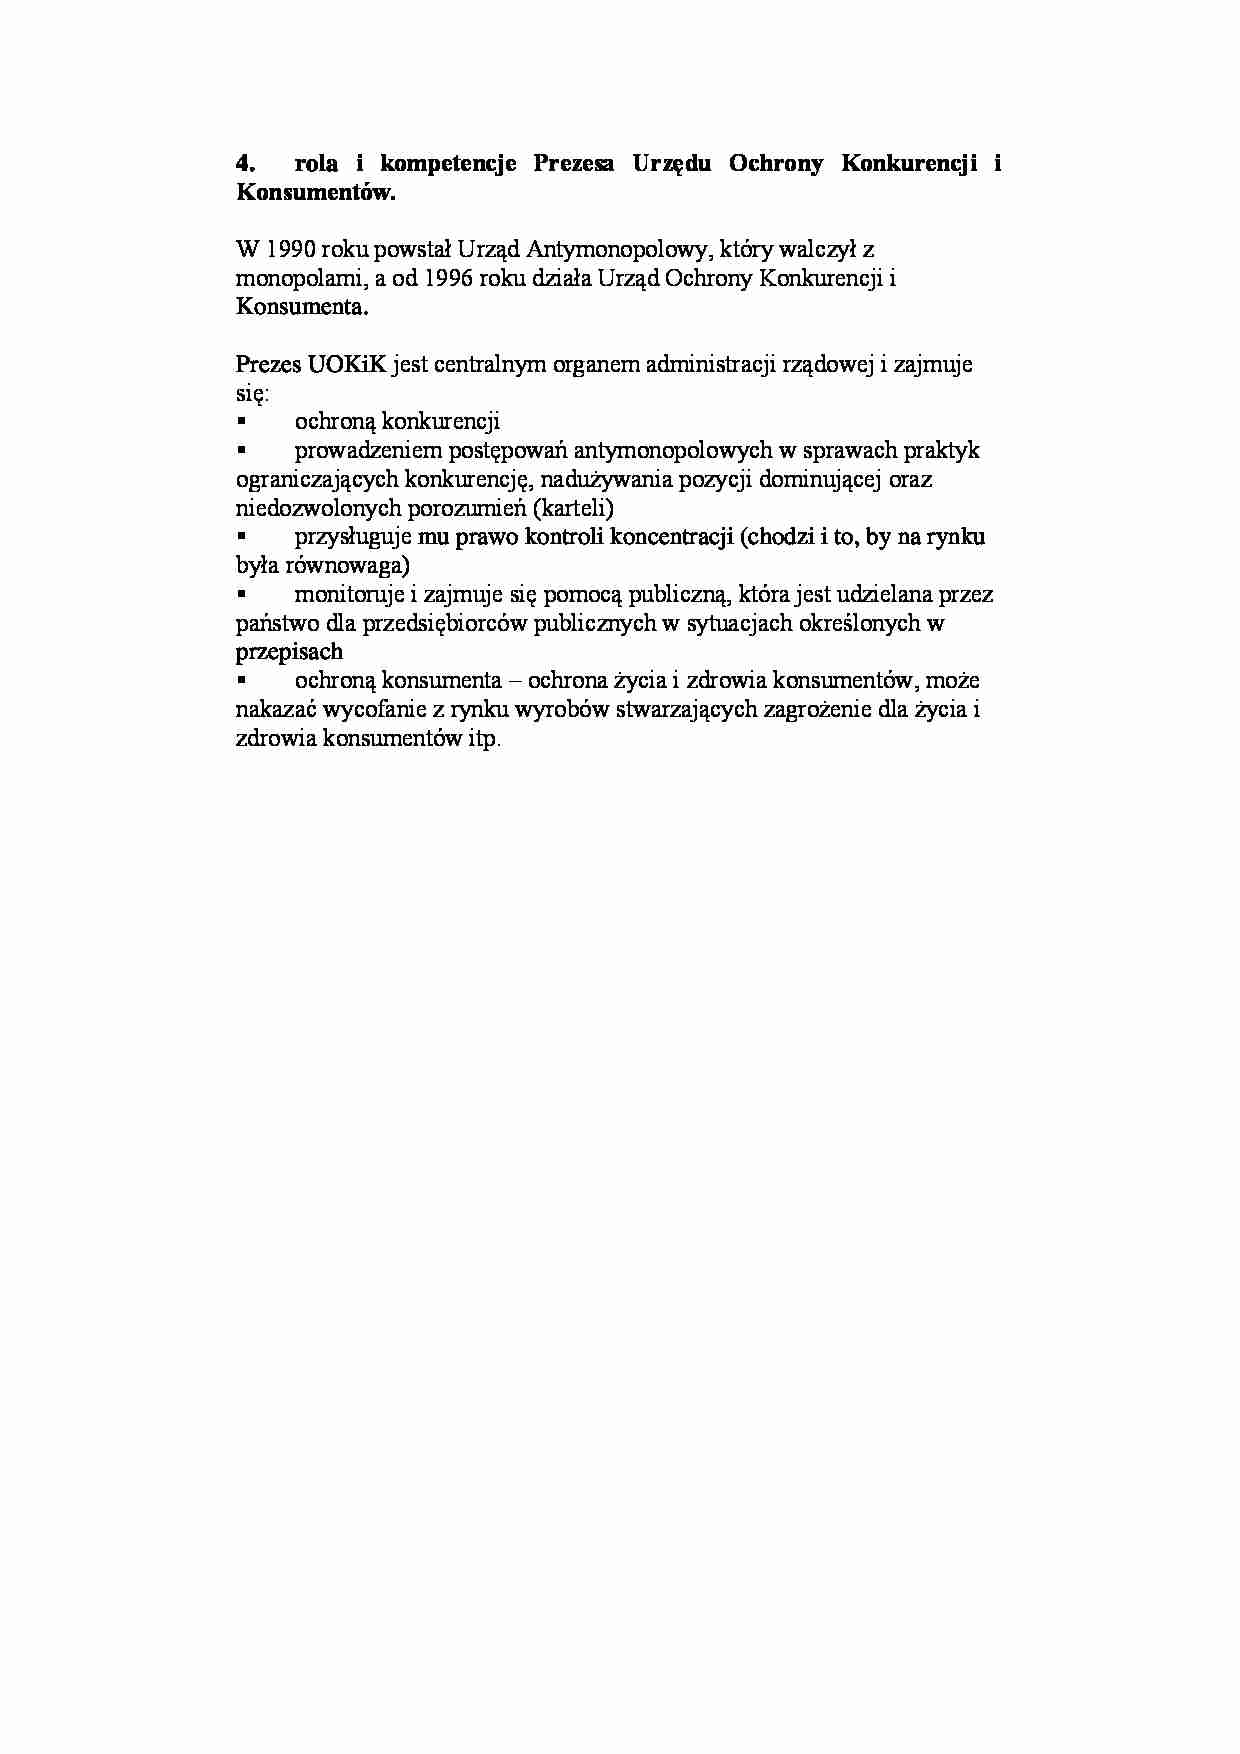 Rola i kompetencje Prezesa Urzędu Ochrony Konkurencji i Konsumentów - strona 1